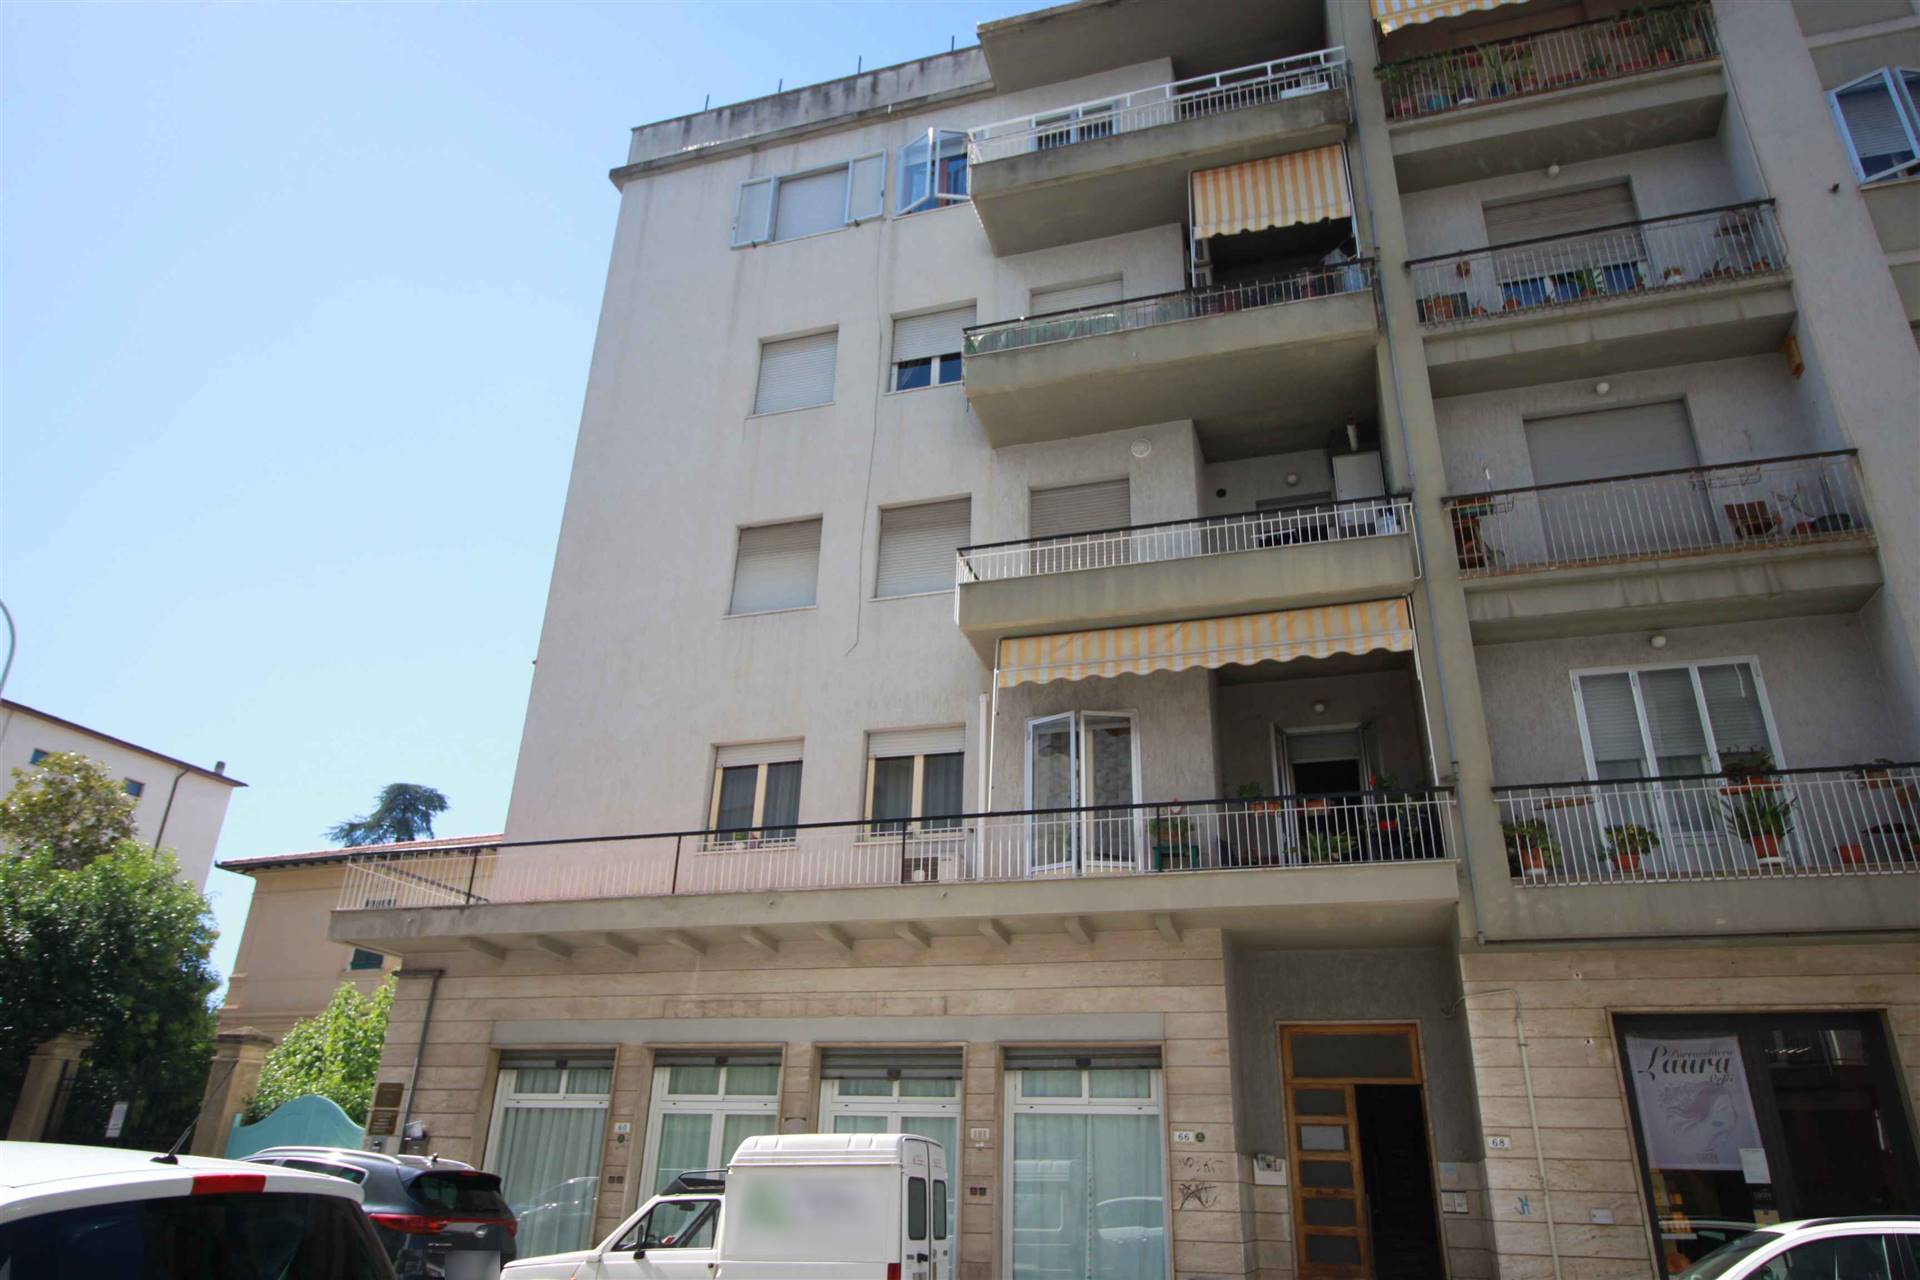 ZONA CENTRALE - Via Aquileia 68 Appartamento ampia metratura situato in zona centrale (vista Sacro Cuore), posto al piano primo SENZA ascensore, 